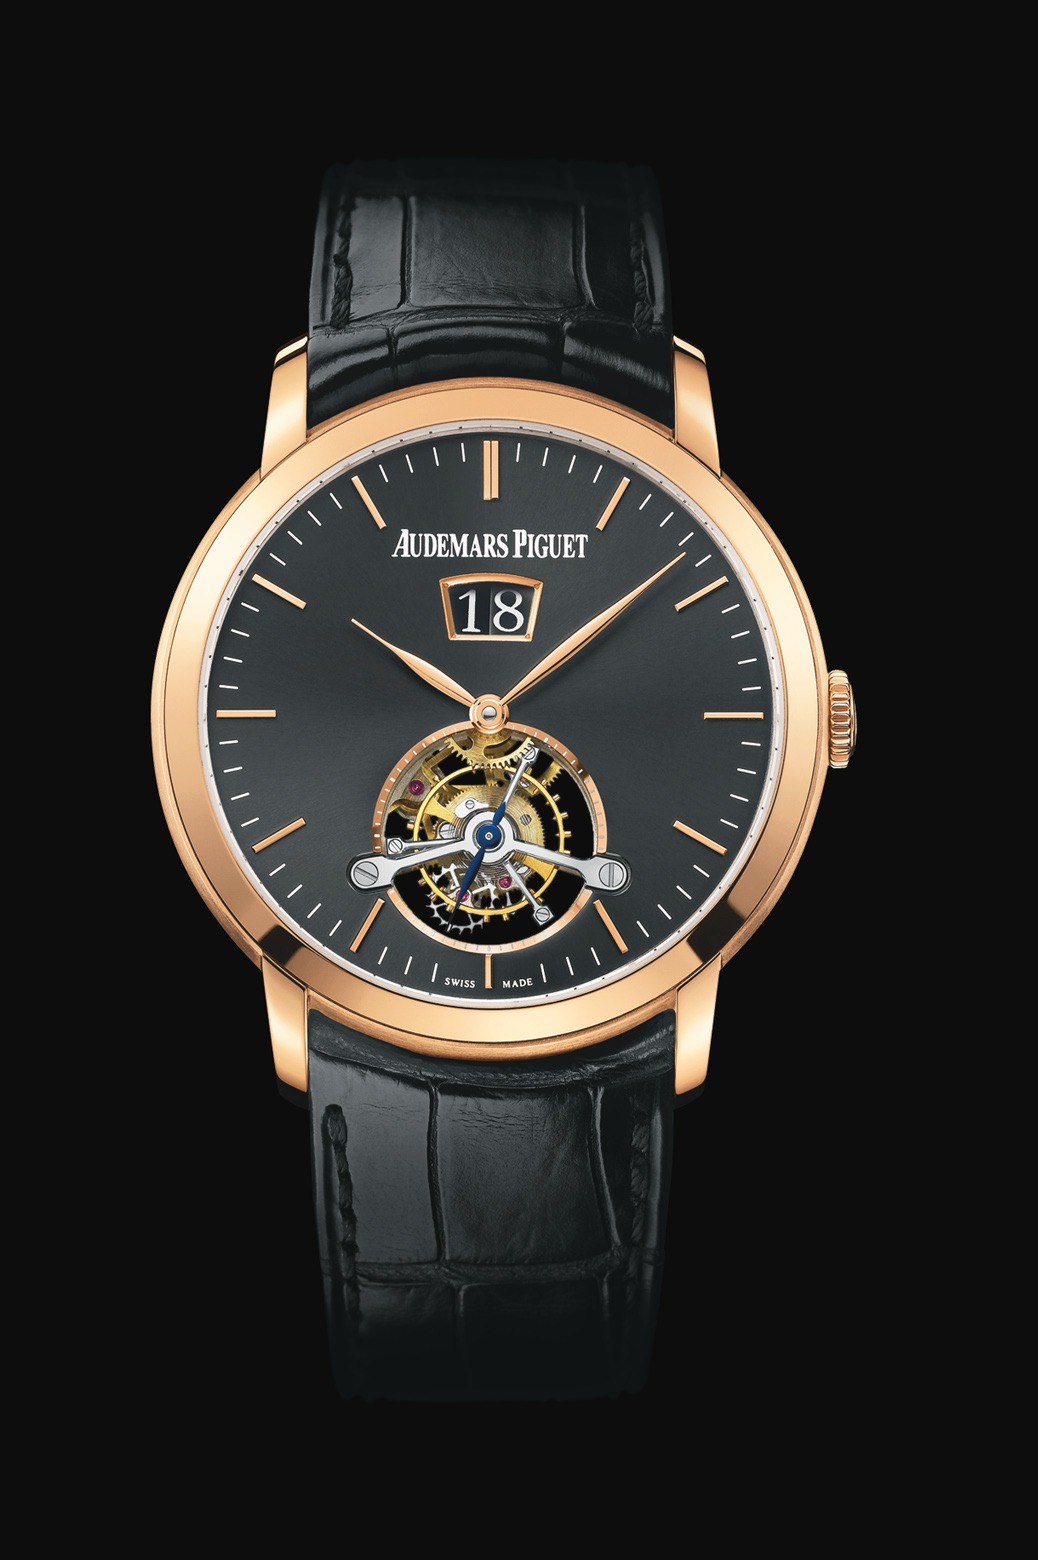 Audemars Piguet Jules Audemars Large Date Tourbillon Pink Gold watch REF: 26559OR.OO.D002CR.01 - Click Image to Close